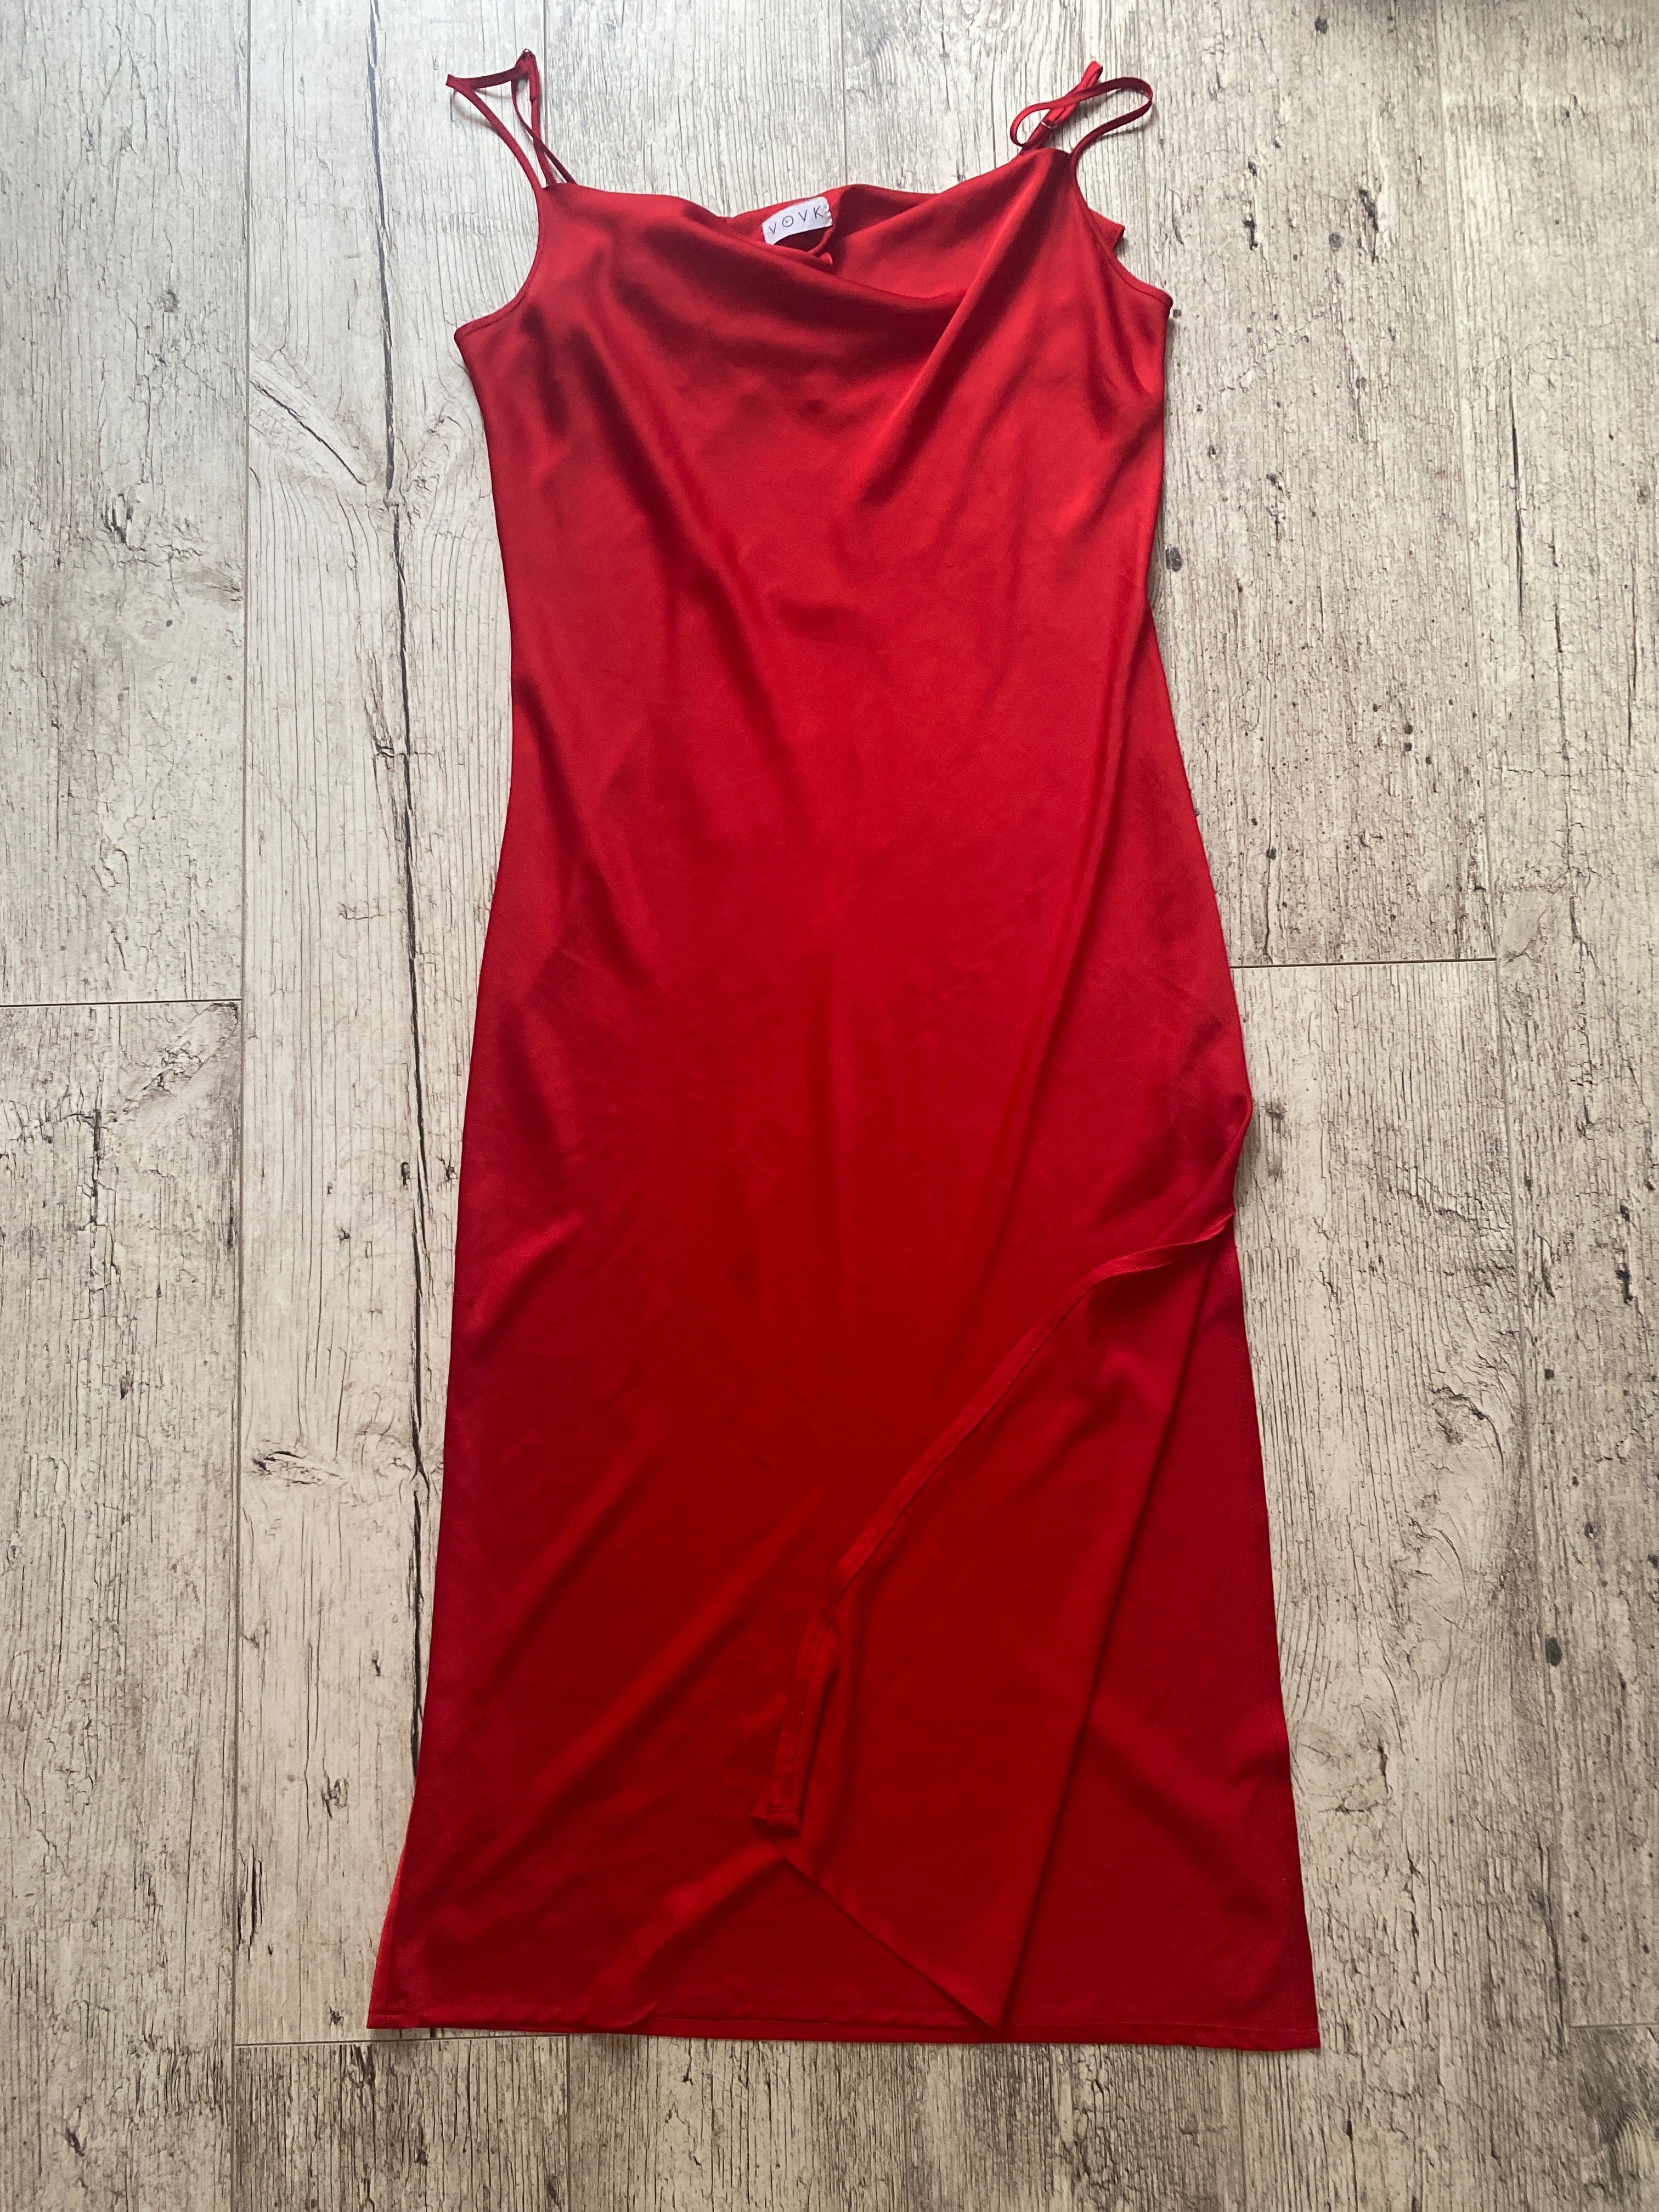 Платье- комбинация красное фирма Vovk размер L